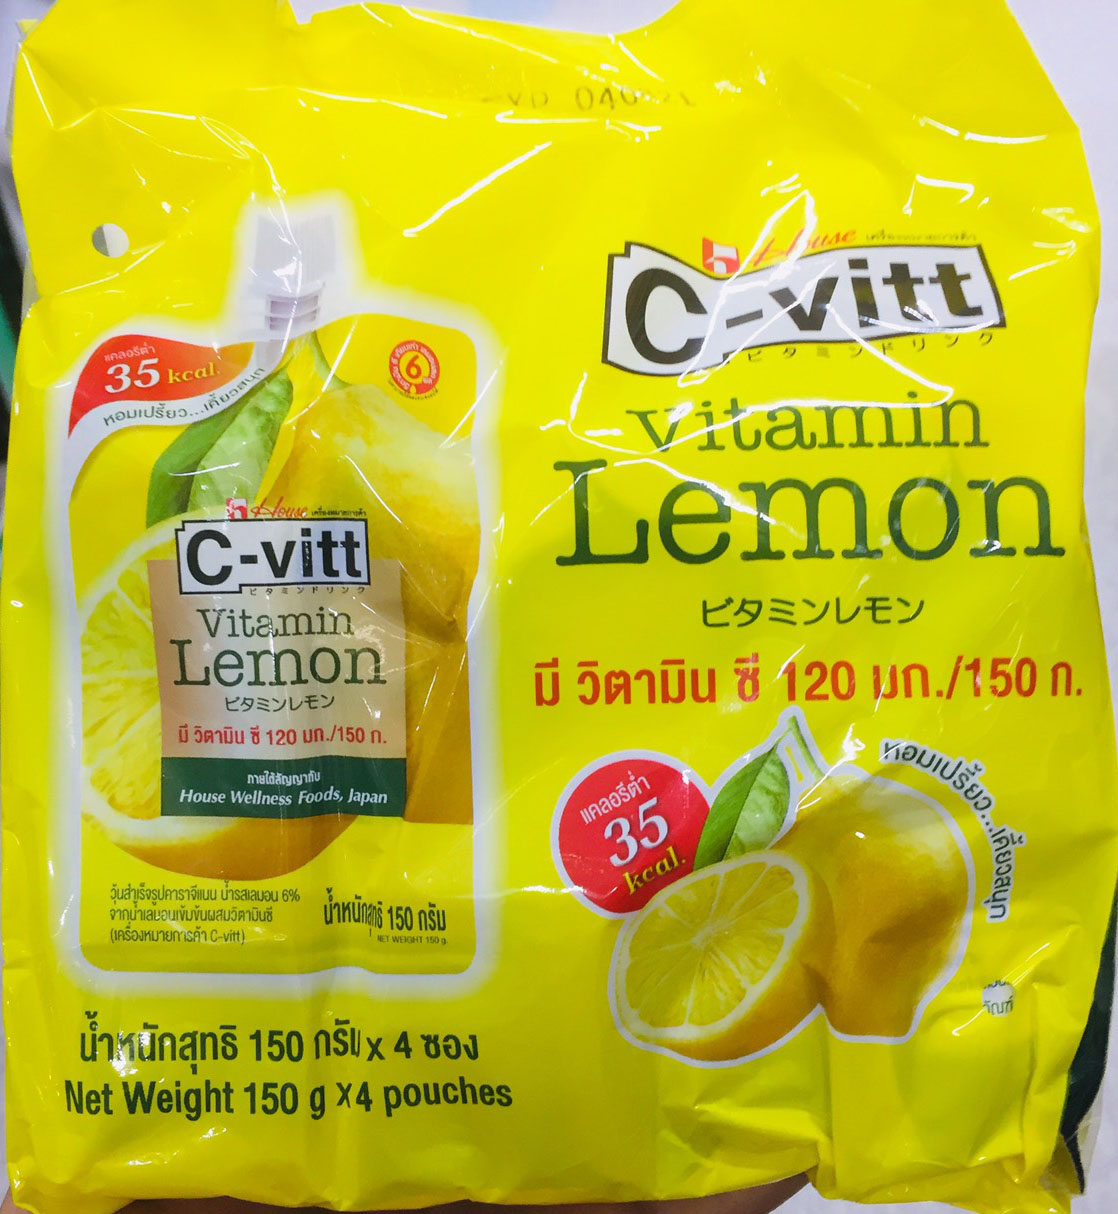 ซีวิท วิตามินซีเยลลี่ รสเลมอน C-Vitt Vitamin Lemon Jelly ซีวิท วุ้น เยลลี่ รสมะนาว C-Vitt วิตามินซีเยลลี่ รสเลมอน 4 ซอง